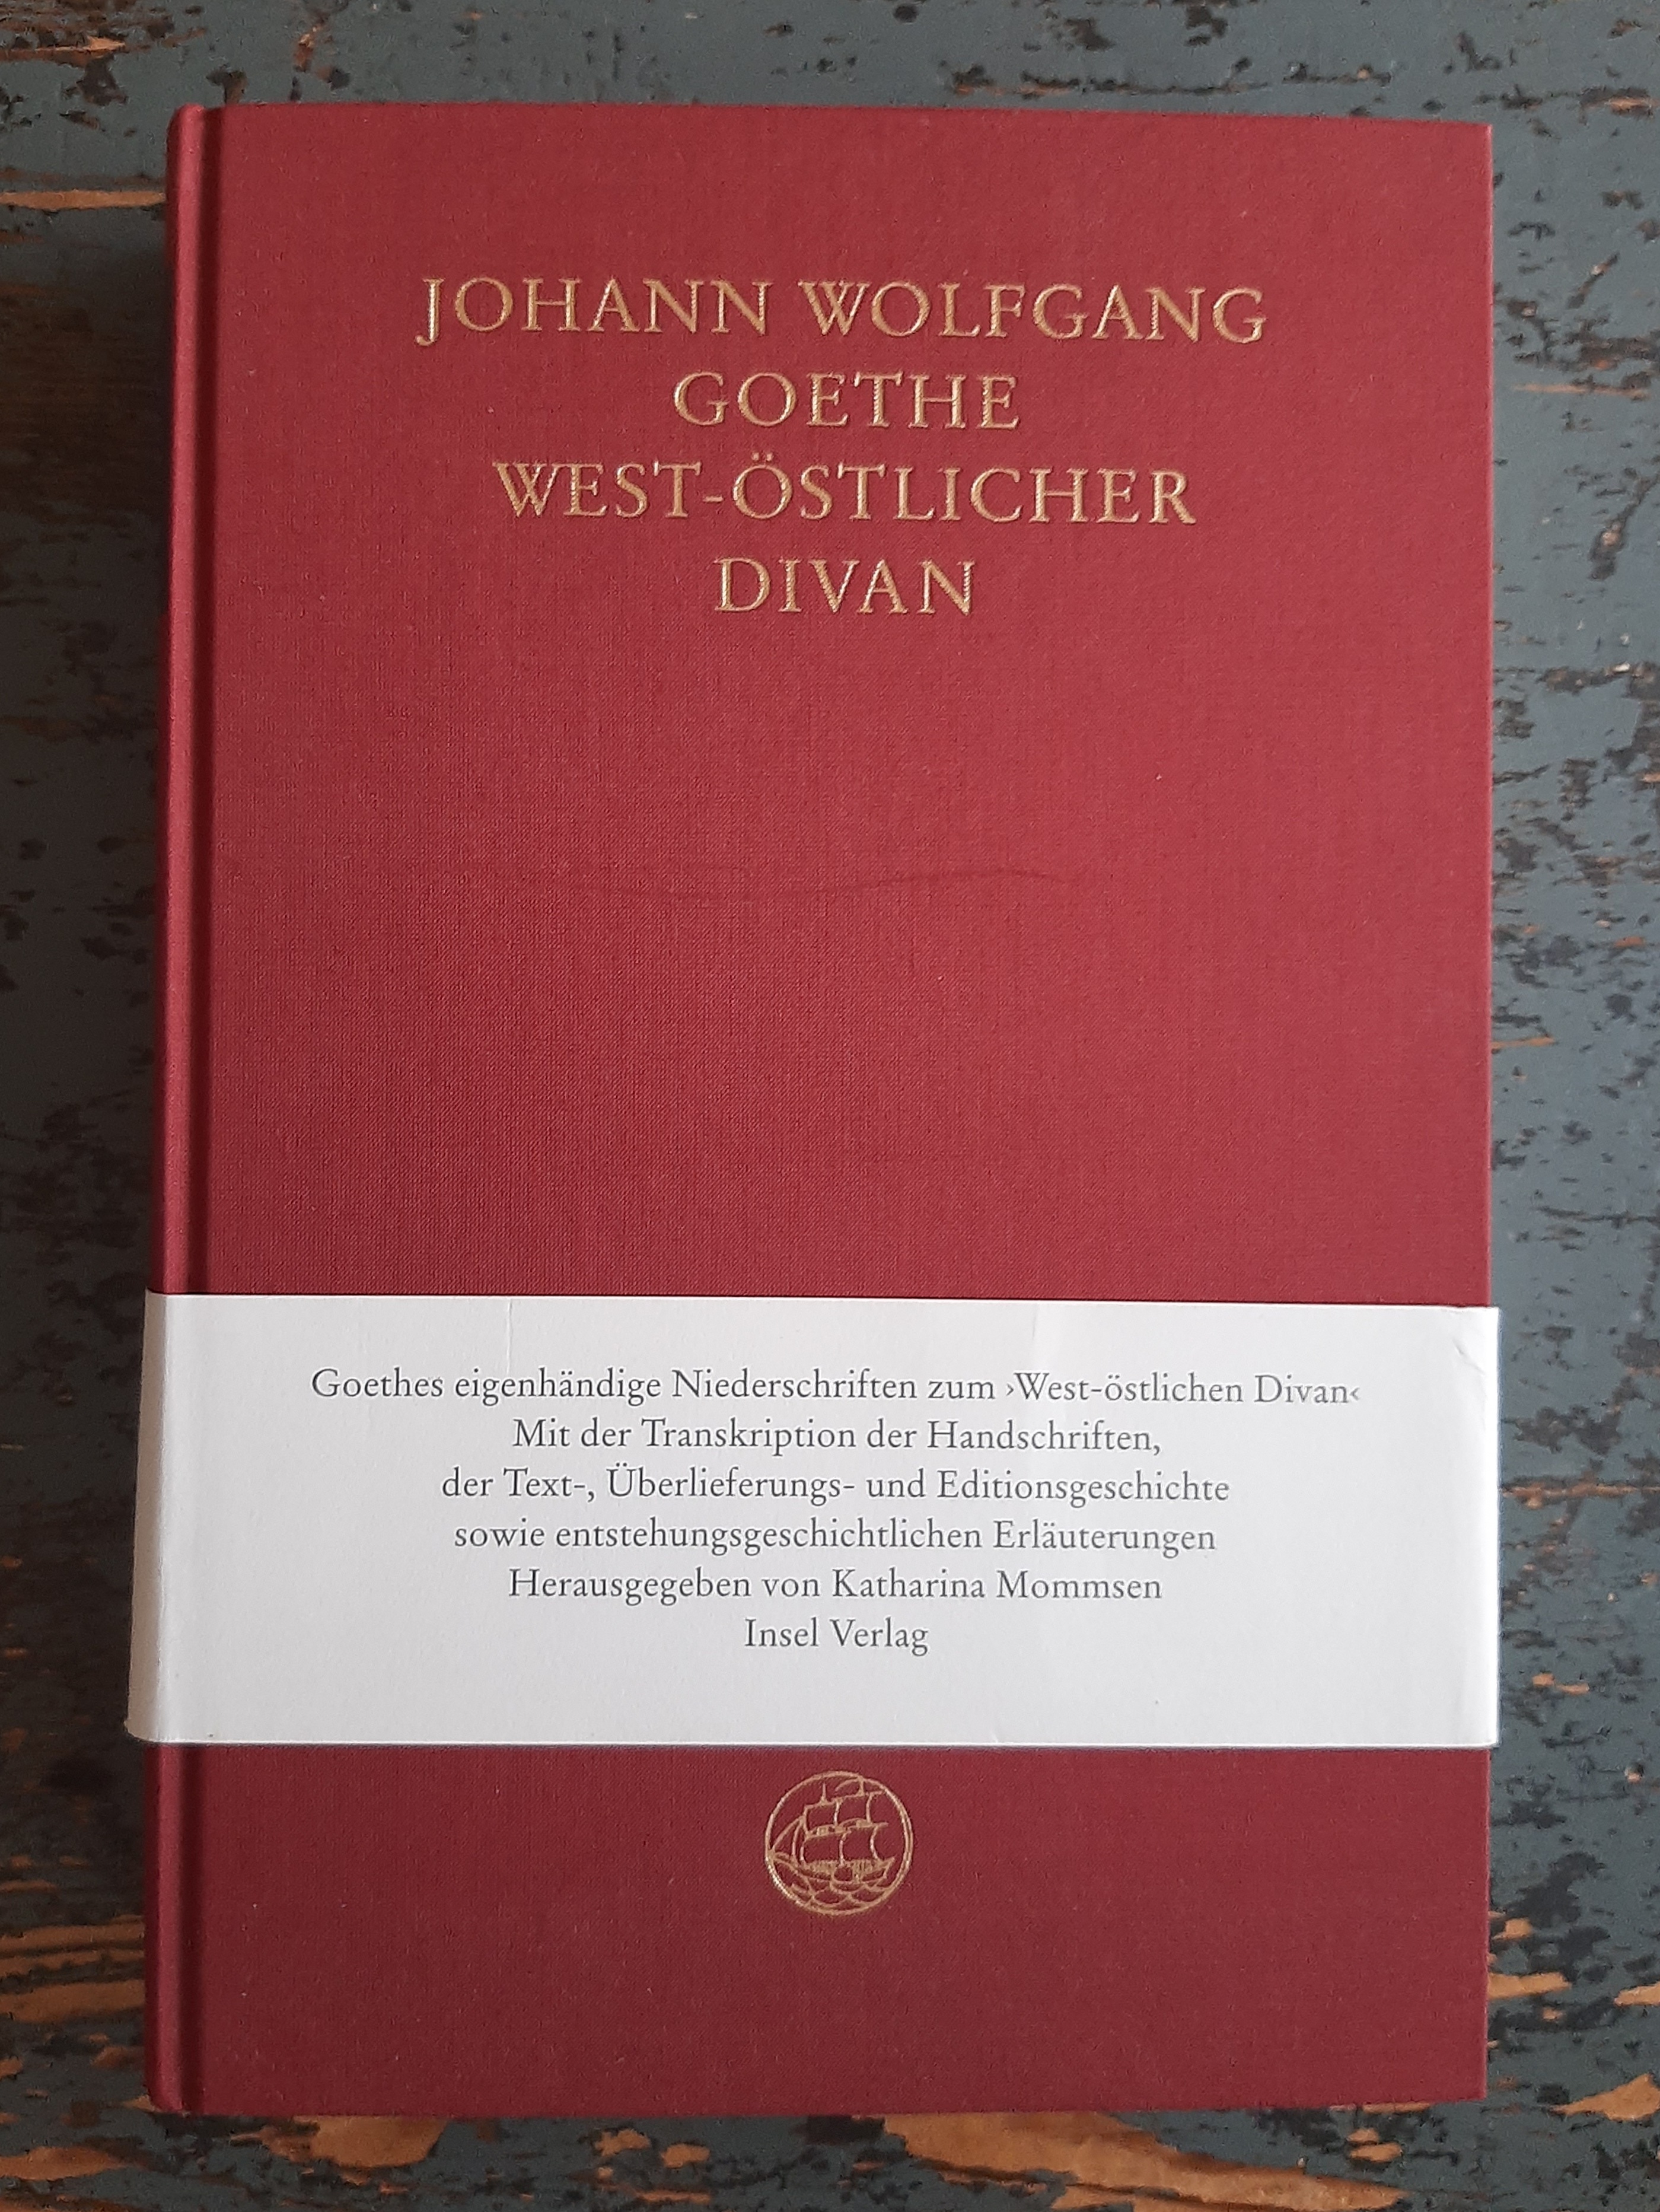 West-östlicher Divan - Eigenhändige Niederschriften - Goethe, Johann Wolfgang von (Katharina Mommsen ed.)